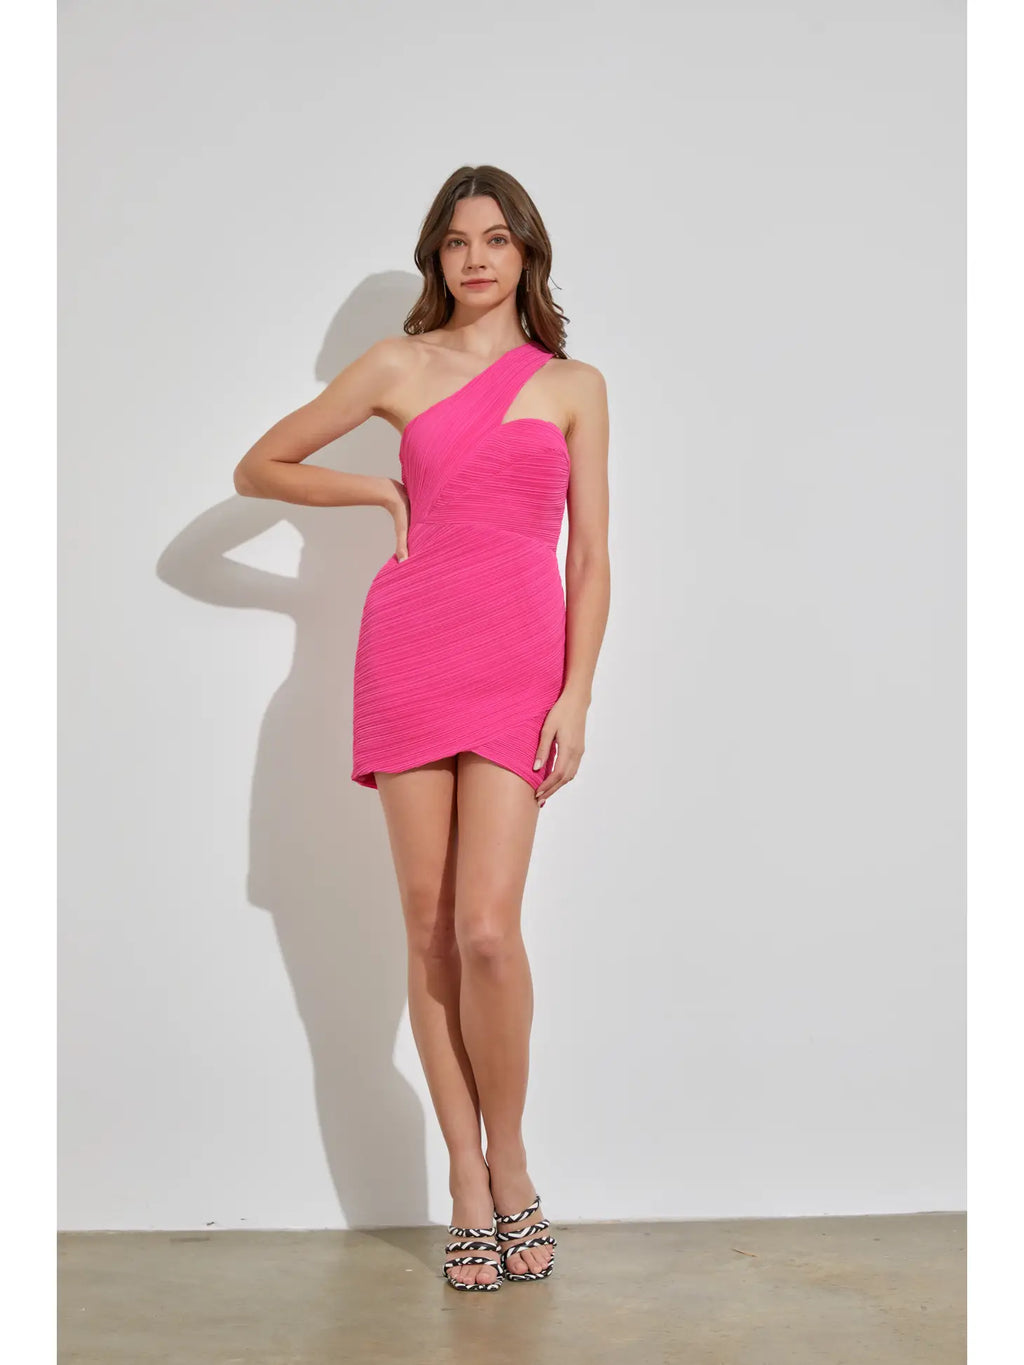 Pleated Doll Pink Mini Dress *Final Sale*